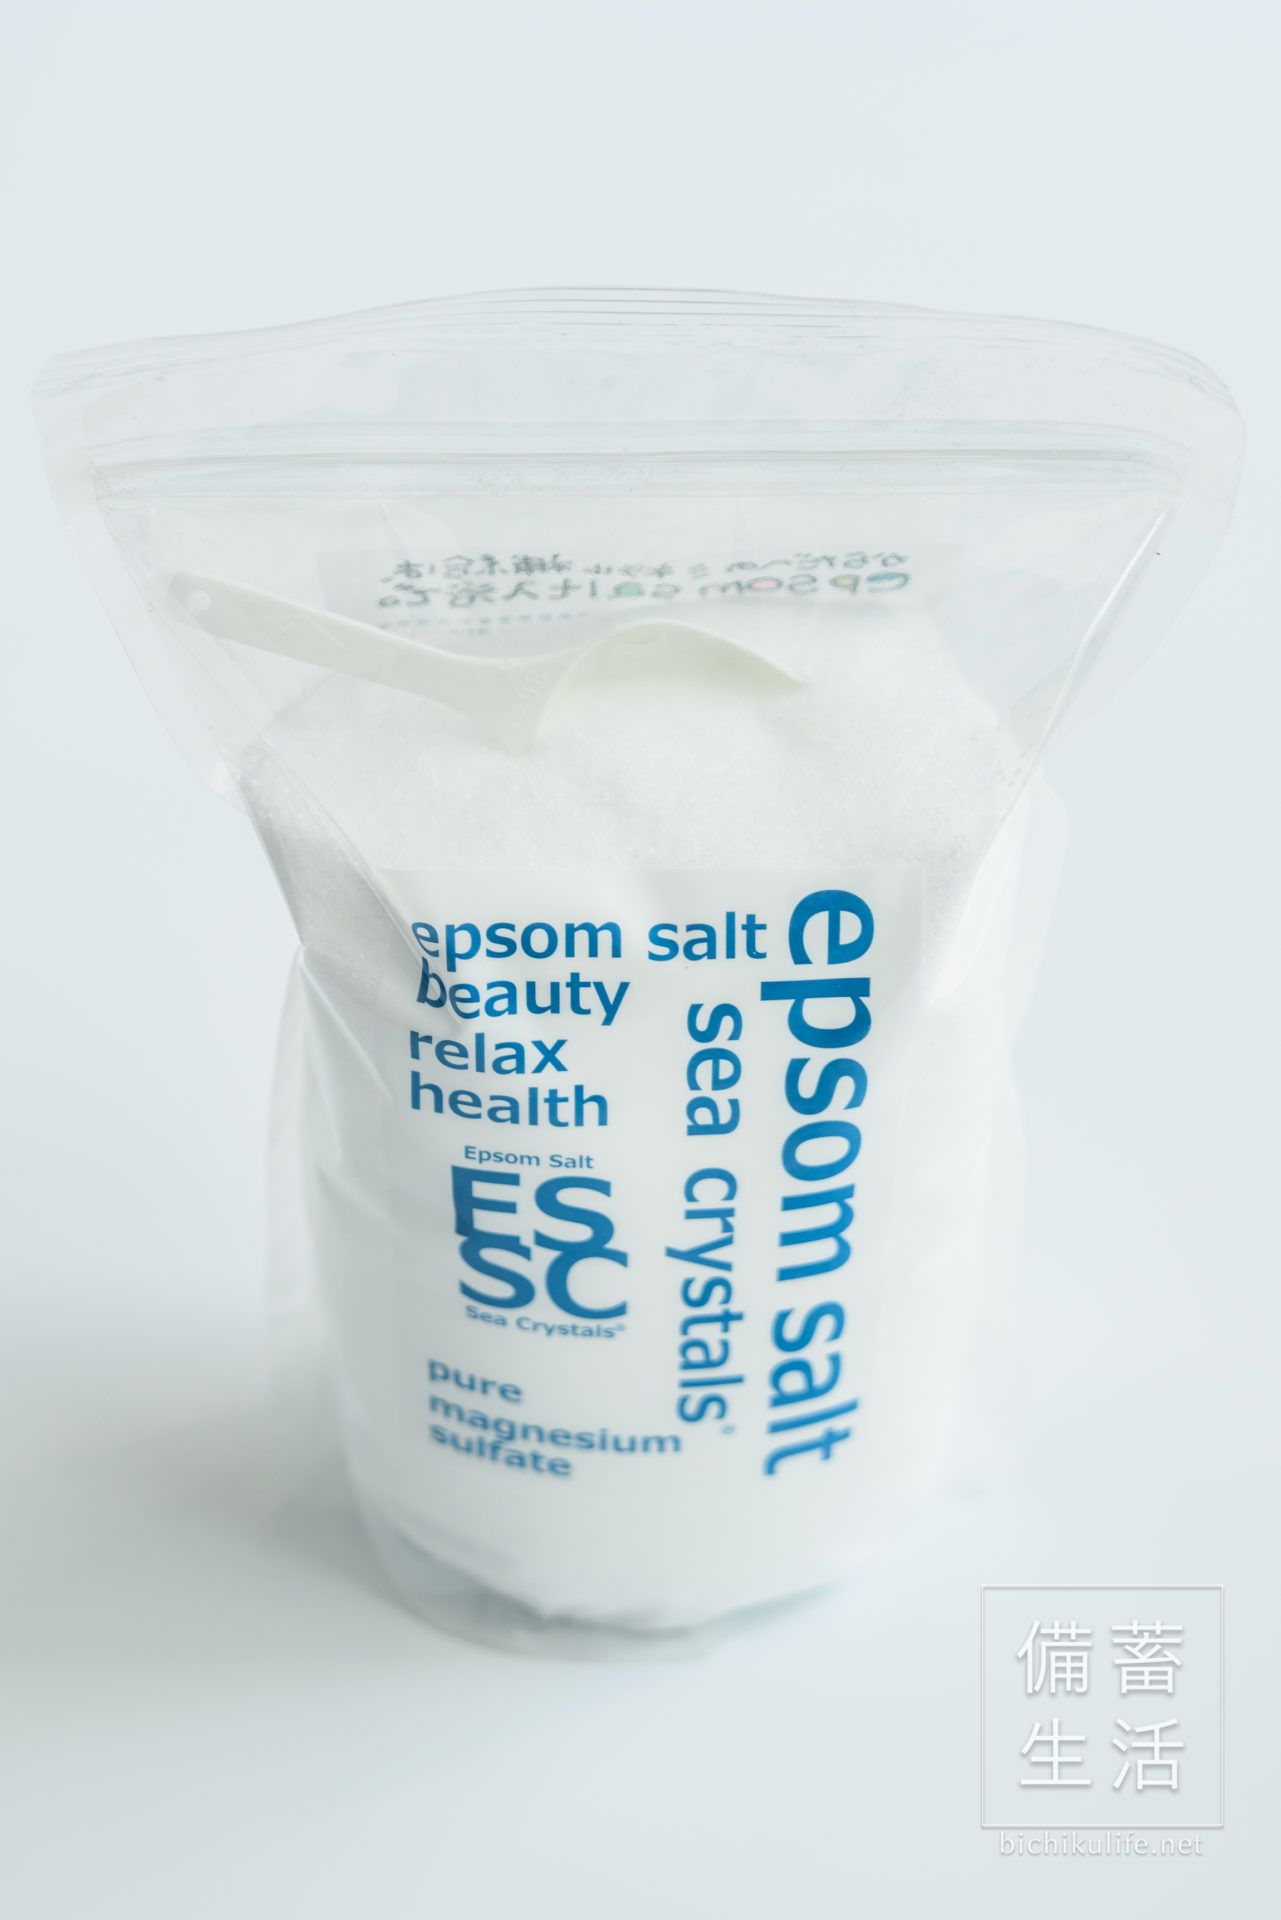 シークリスタルスのエプソムソルト、硫酸マグネシウム入浴剤